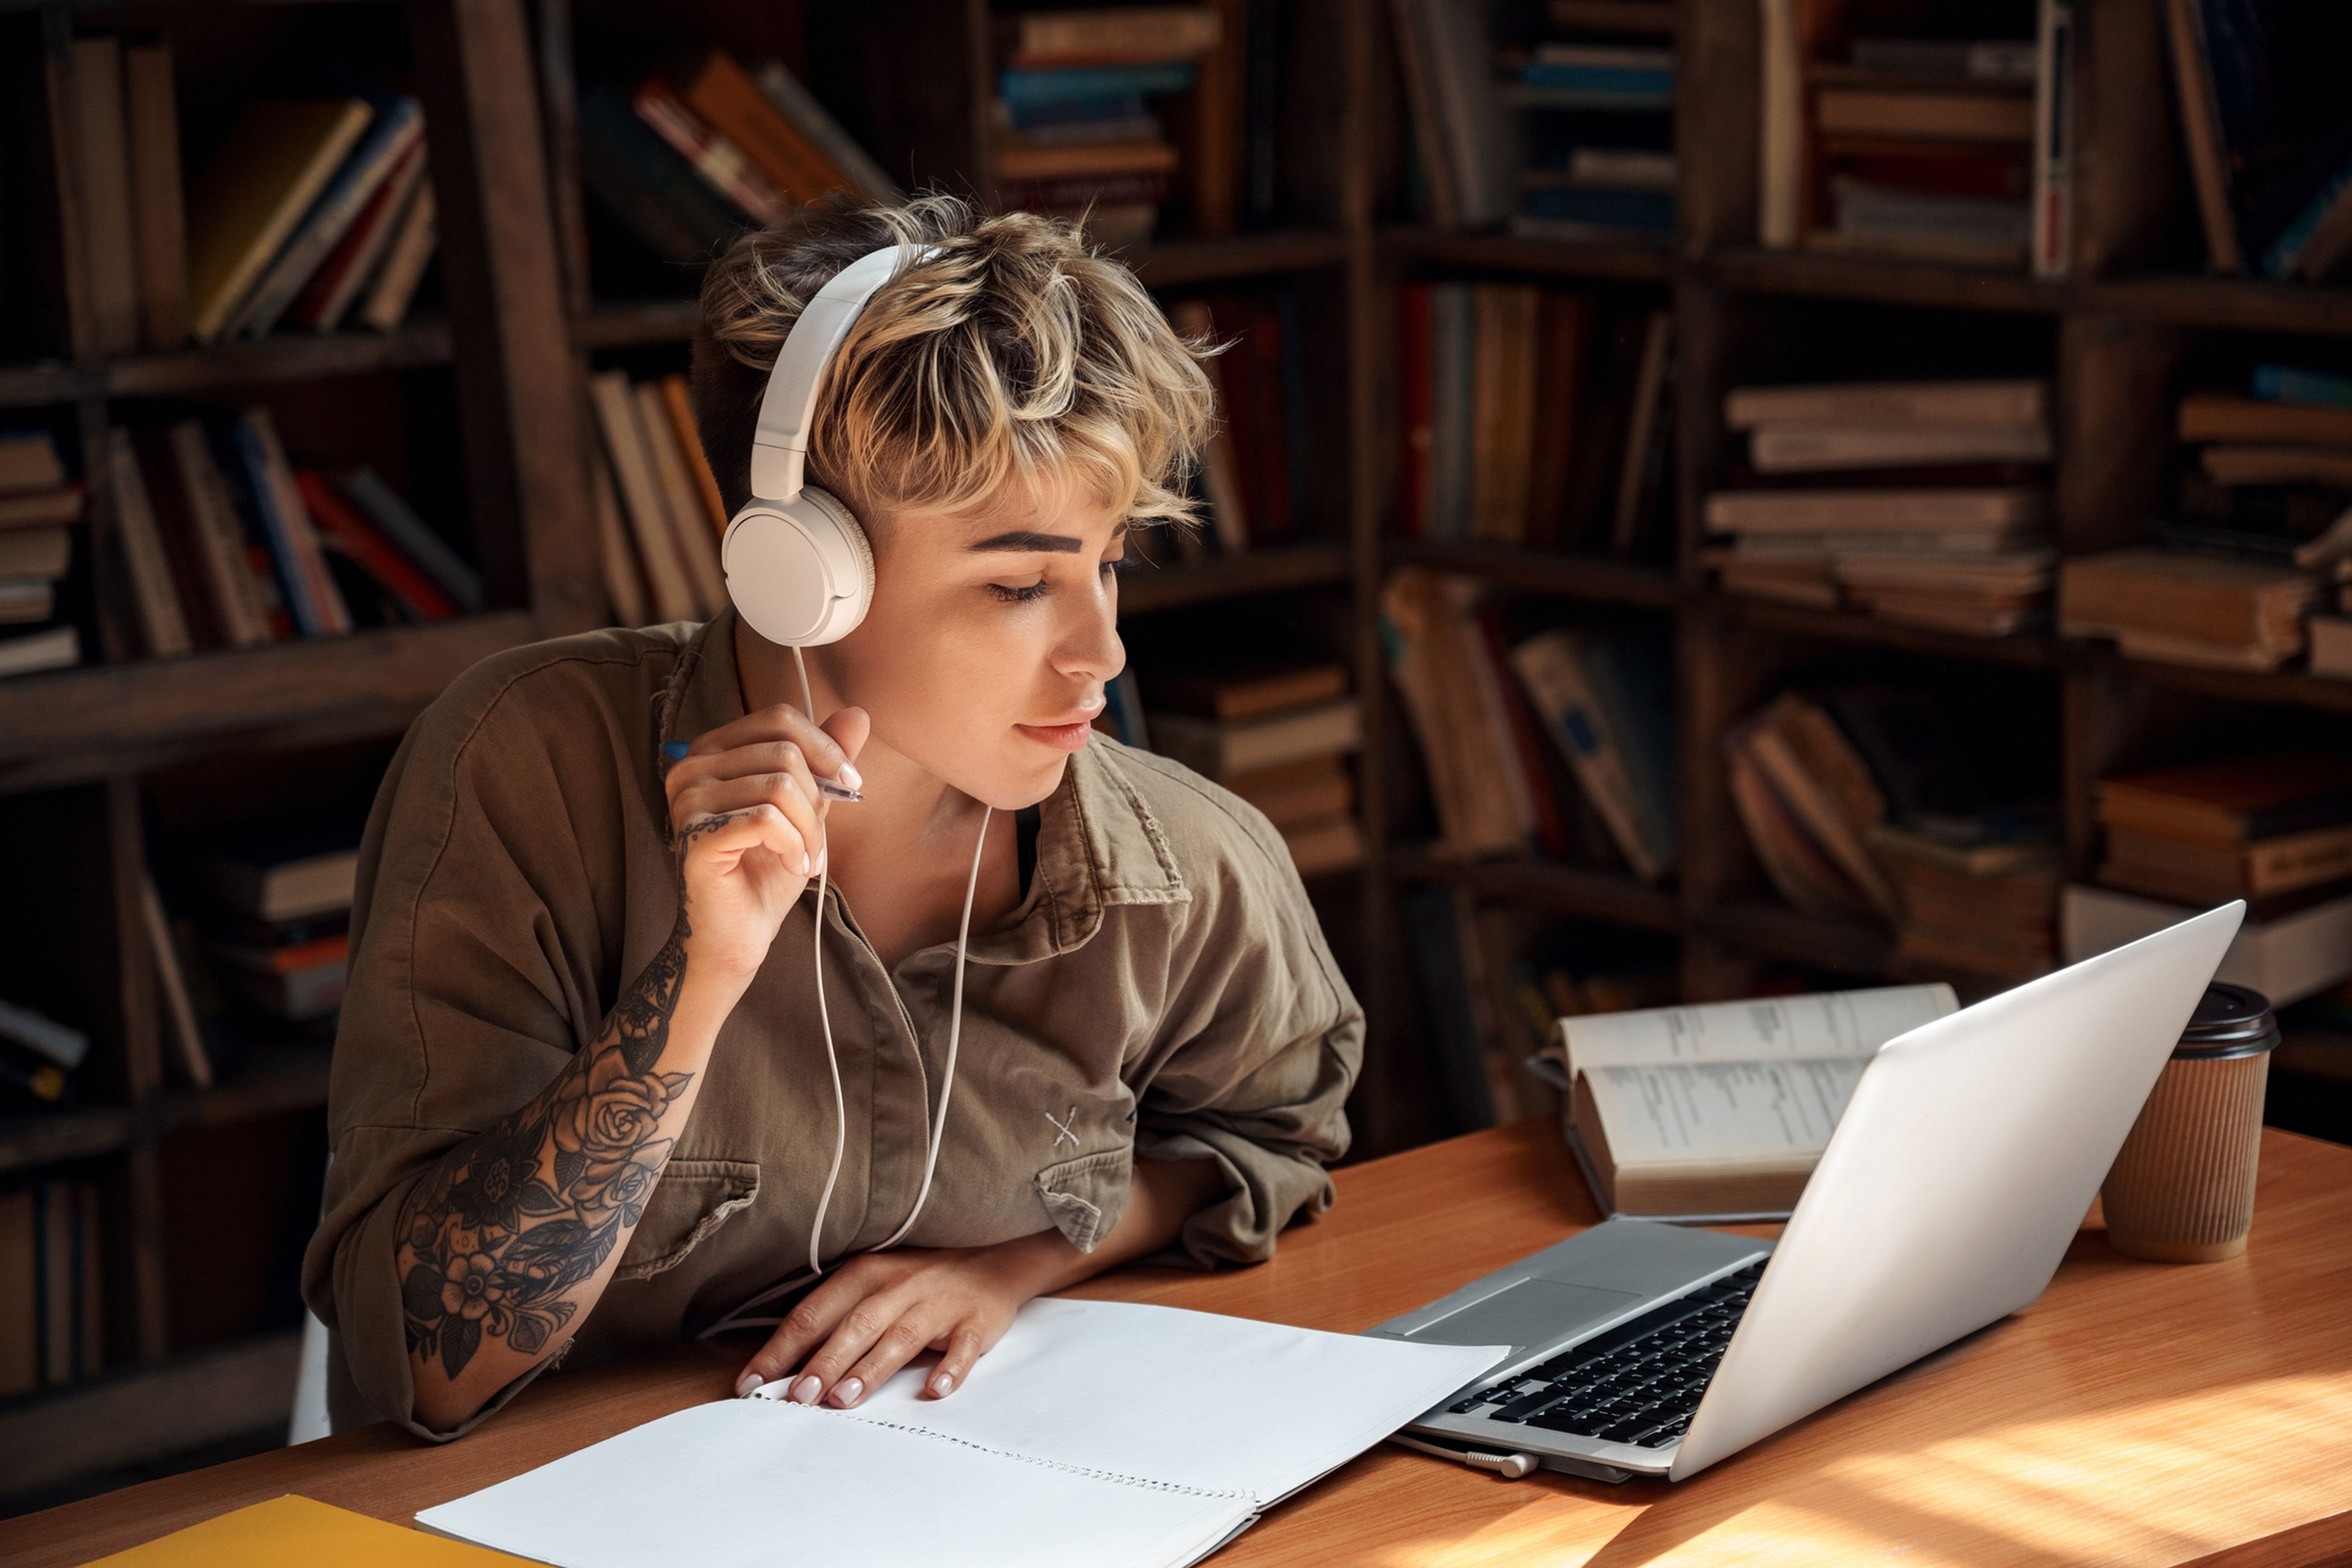 Una joven estudia, mientras escucha música con unos auriculares.